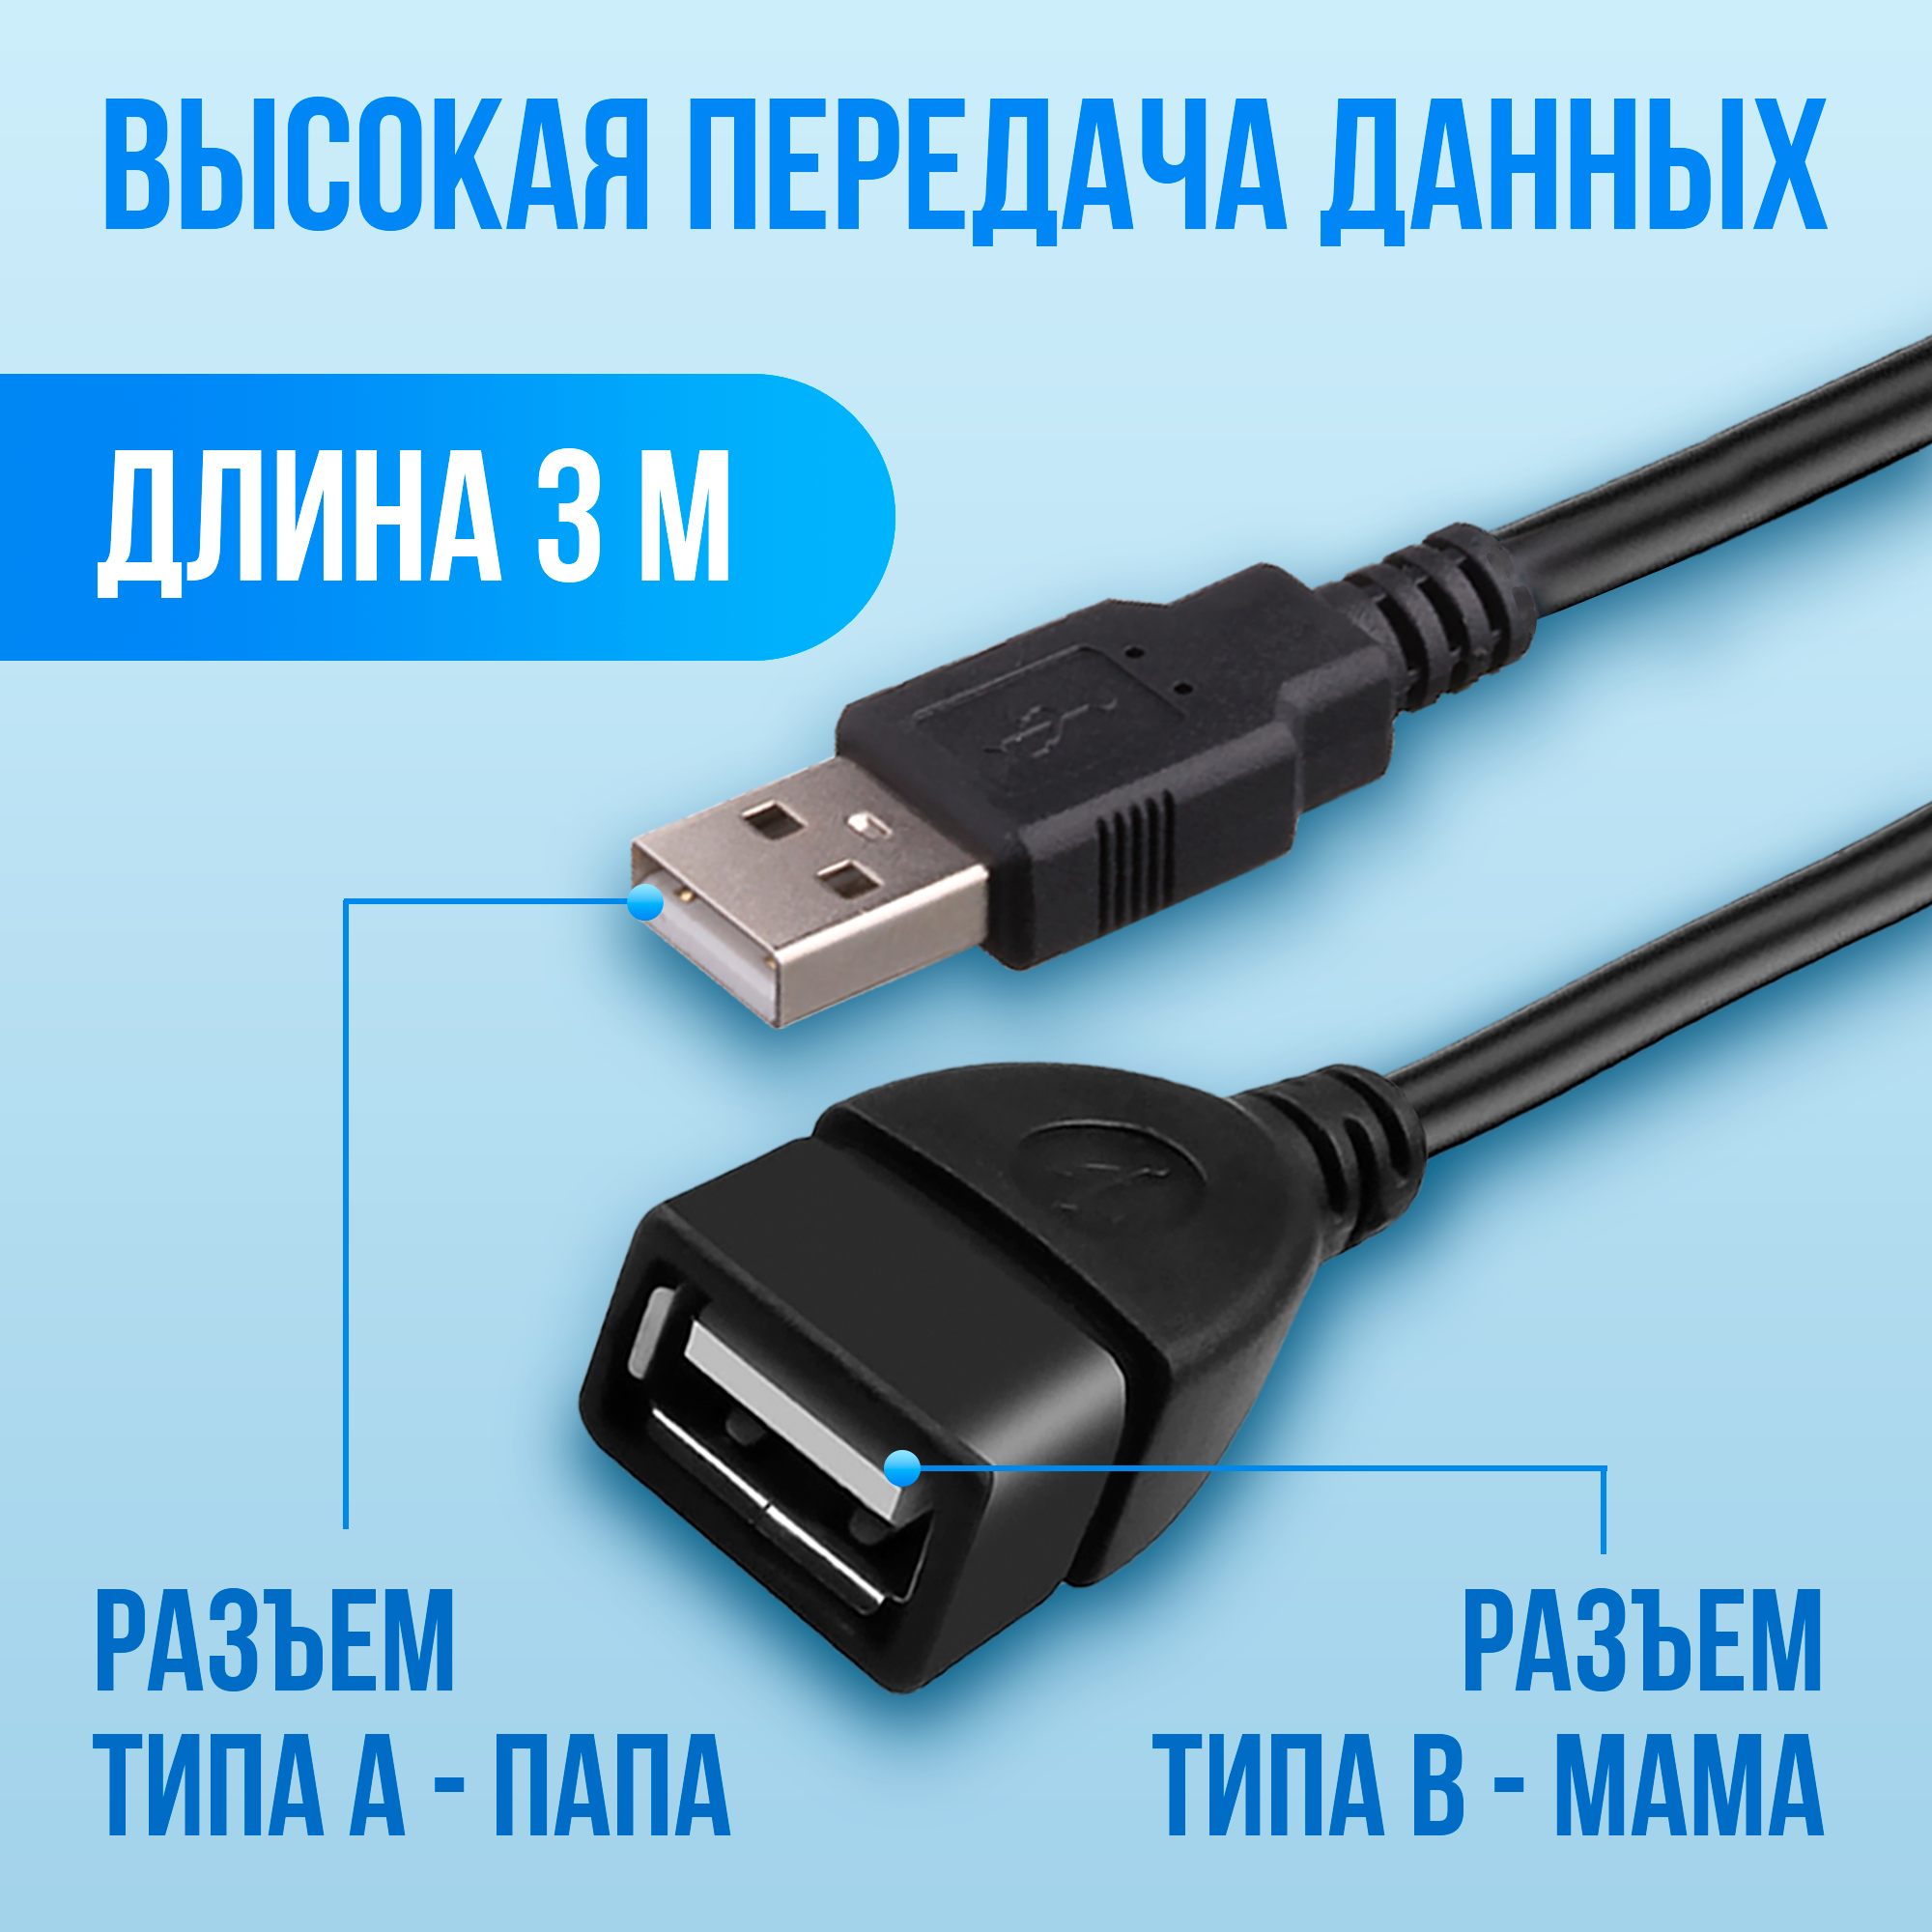 Удлинитель кабеля USB для компьютера 3 метра, AMFOX, шнур A - B "папа-мама", переходник для подключения юсб устройств, провод для ноутбука, черный